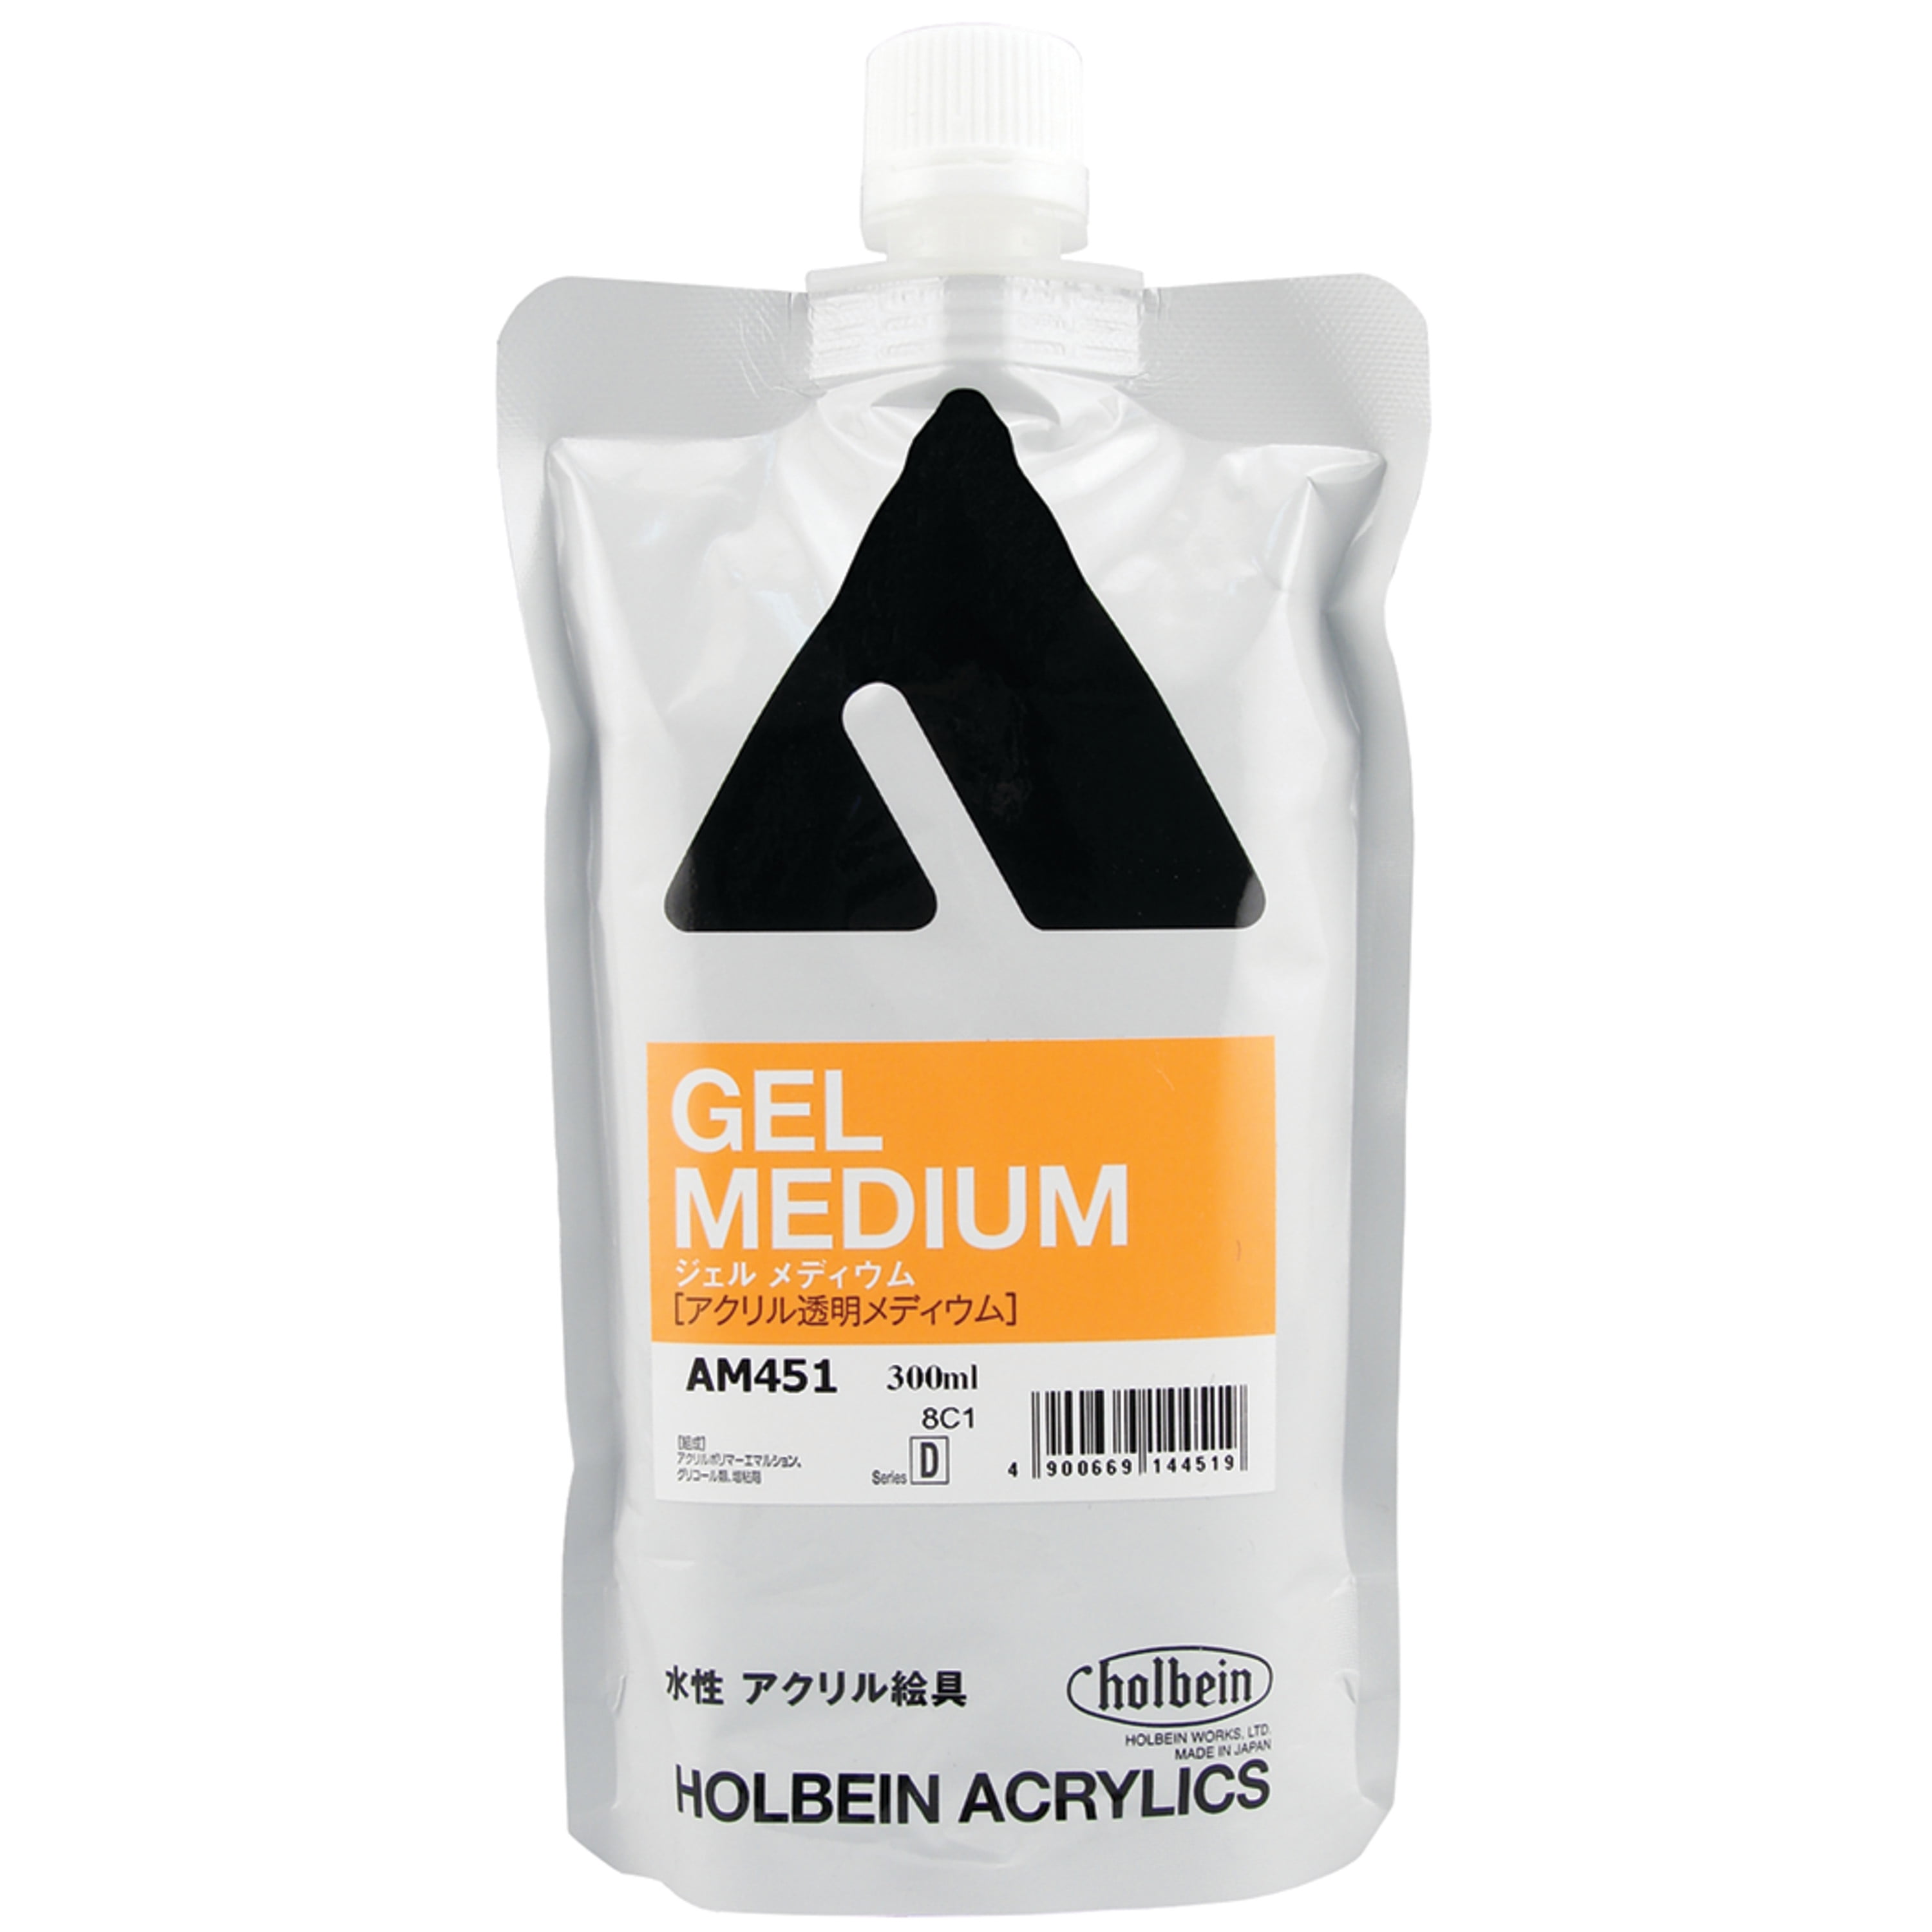 U.S. Art Supply Clear Gesso Acrylic Medium, 480ml Bottle 